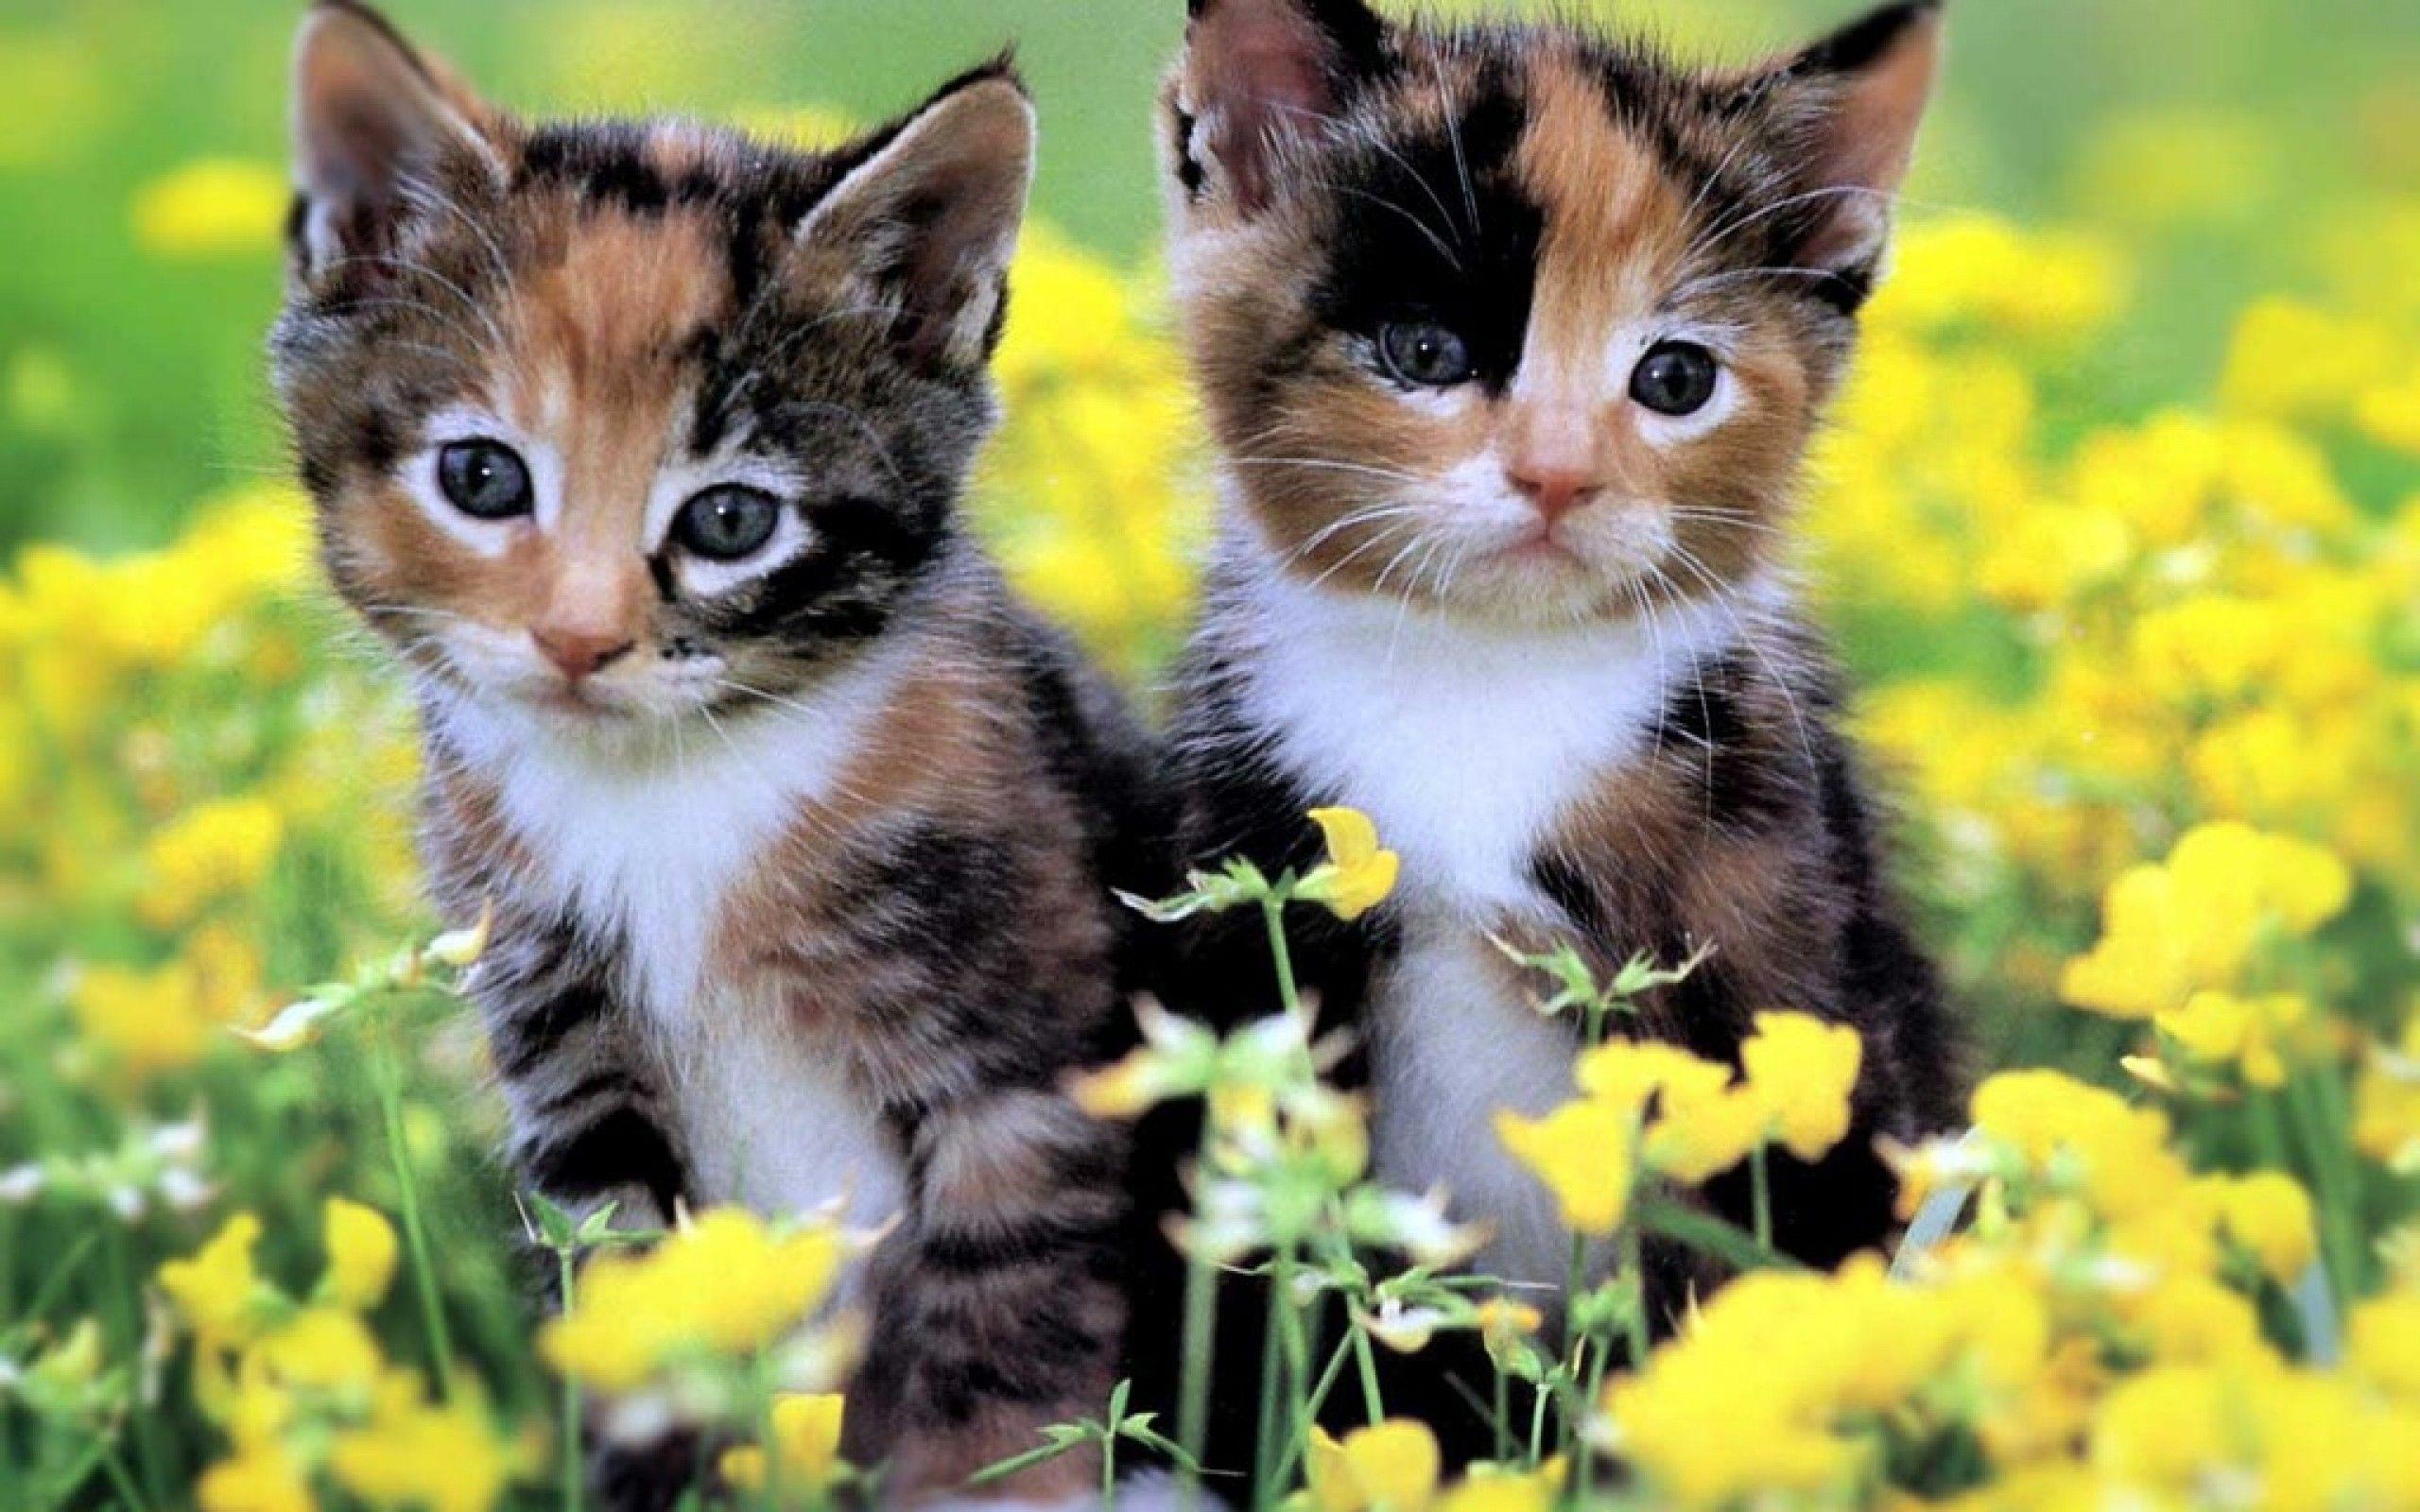 Summer Kitten Wallpapers - Top Free Summer Kitten ...